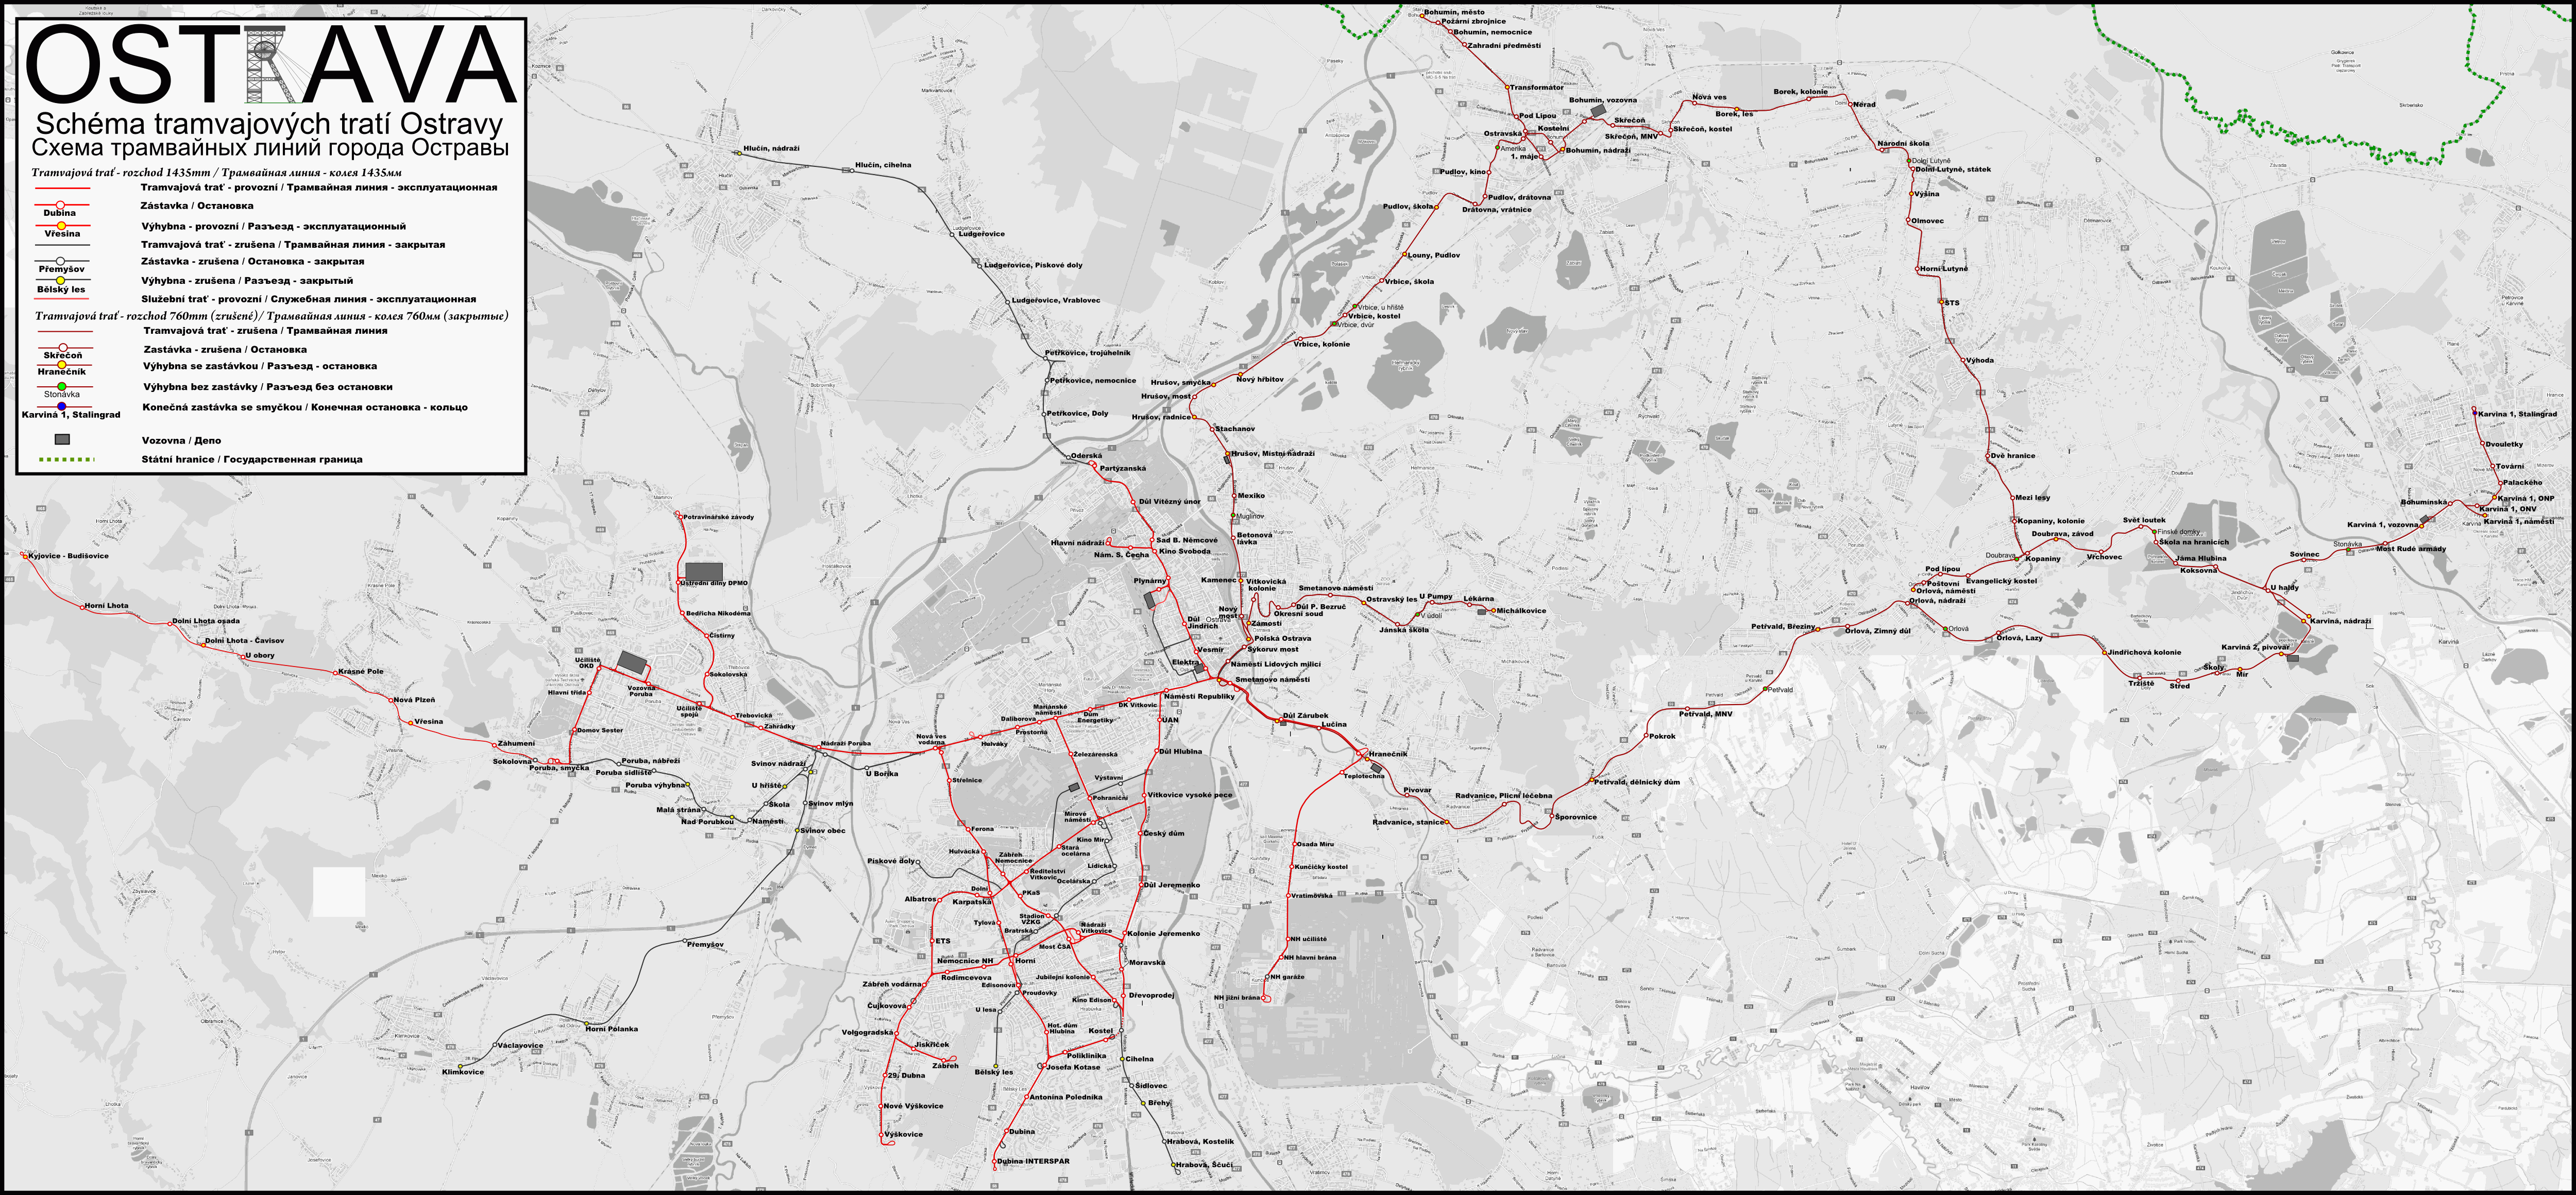 Ostrava — Maps